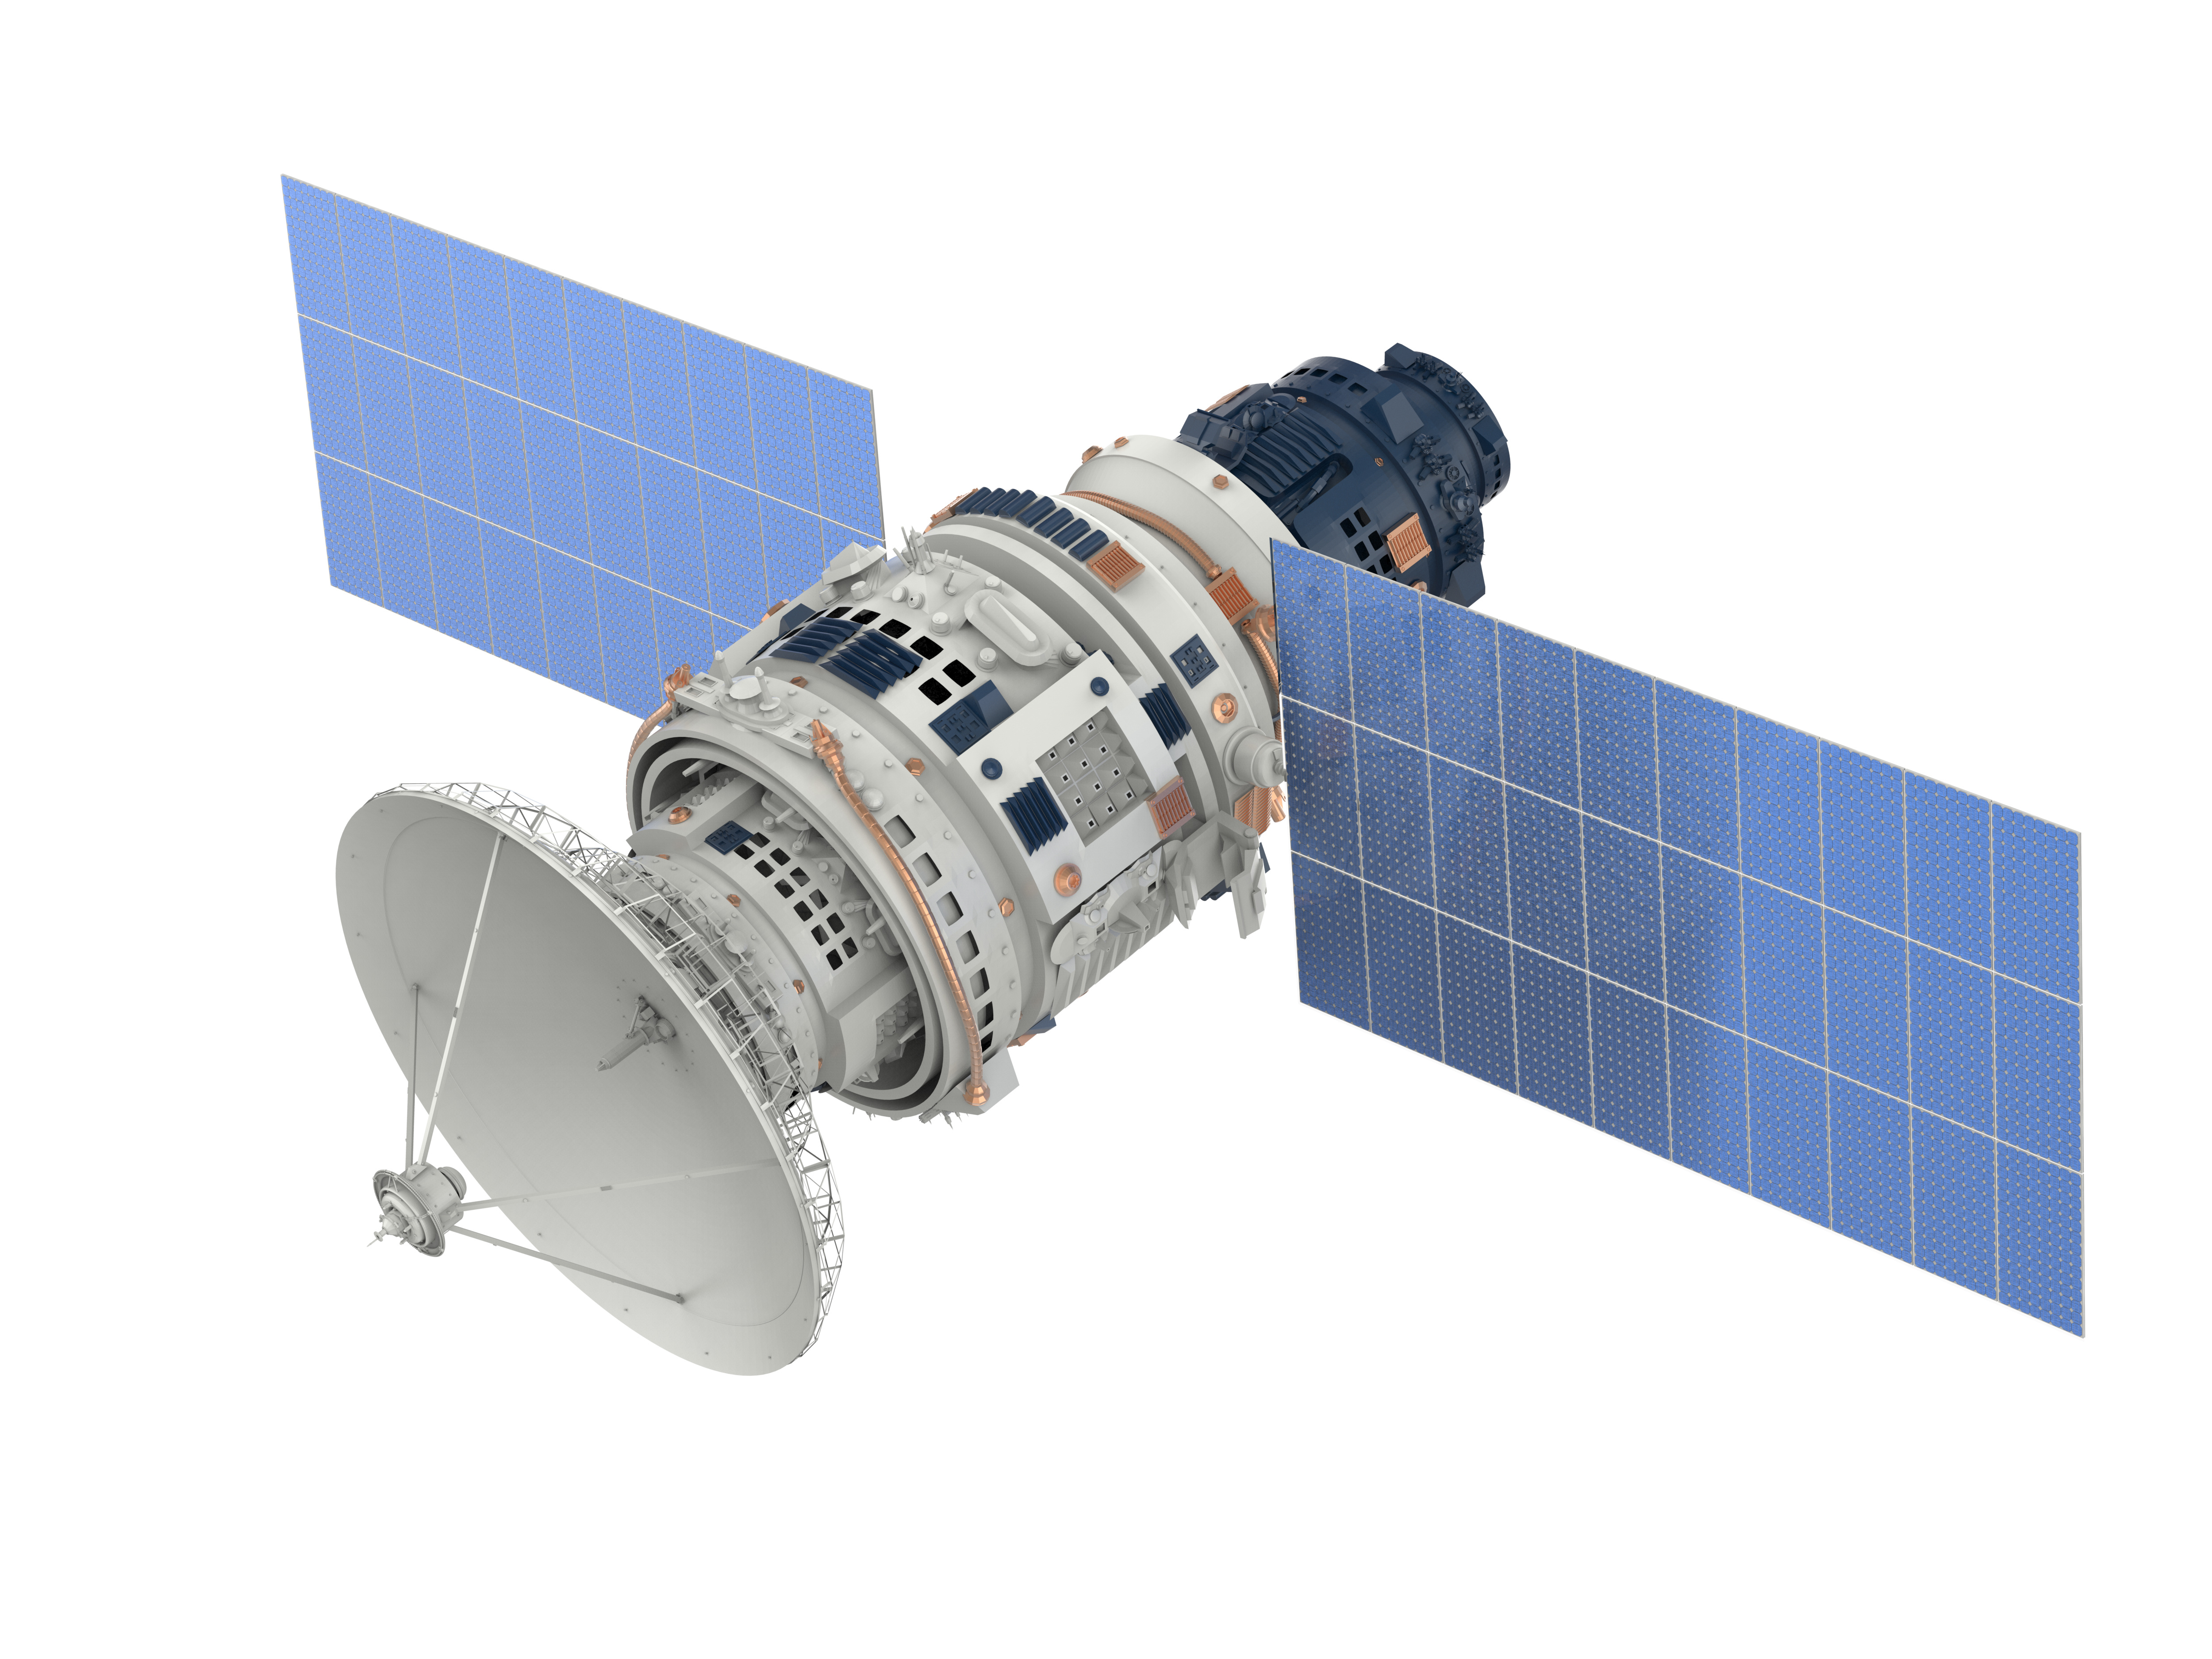 Satellite-1